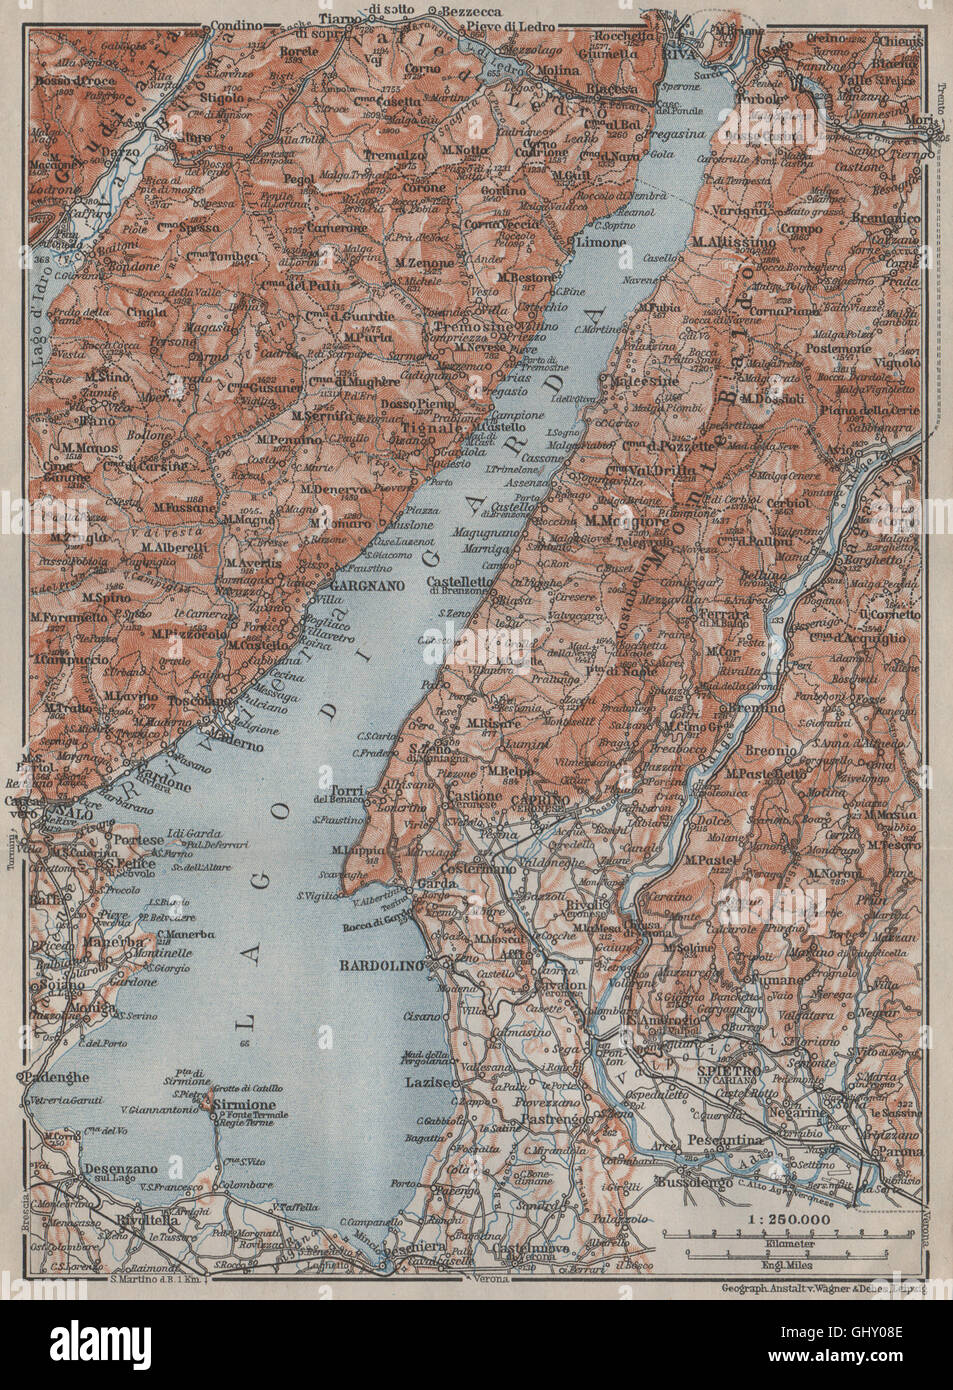 LAGO DI/LAKE GUARDA. Riva Salo Gargnano Bardolino. Topo-map. Italy, 1909 Stock Photo